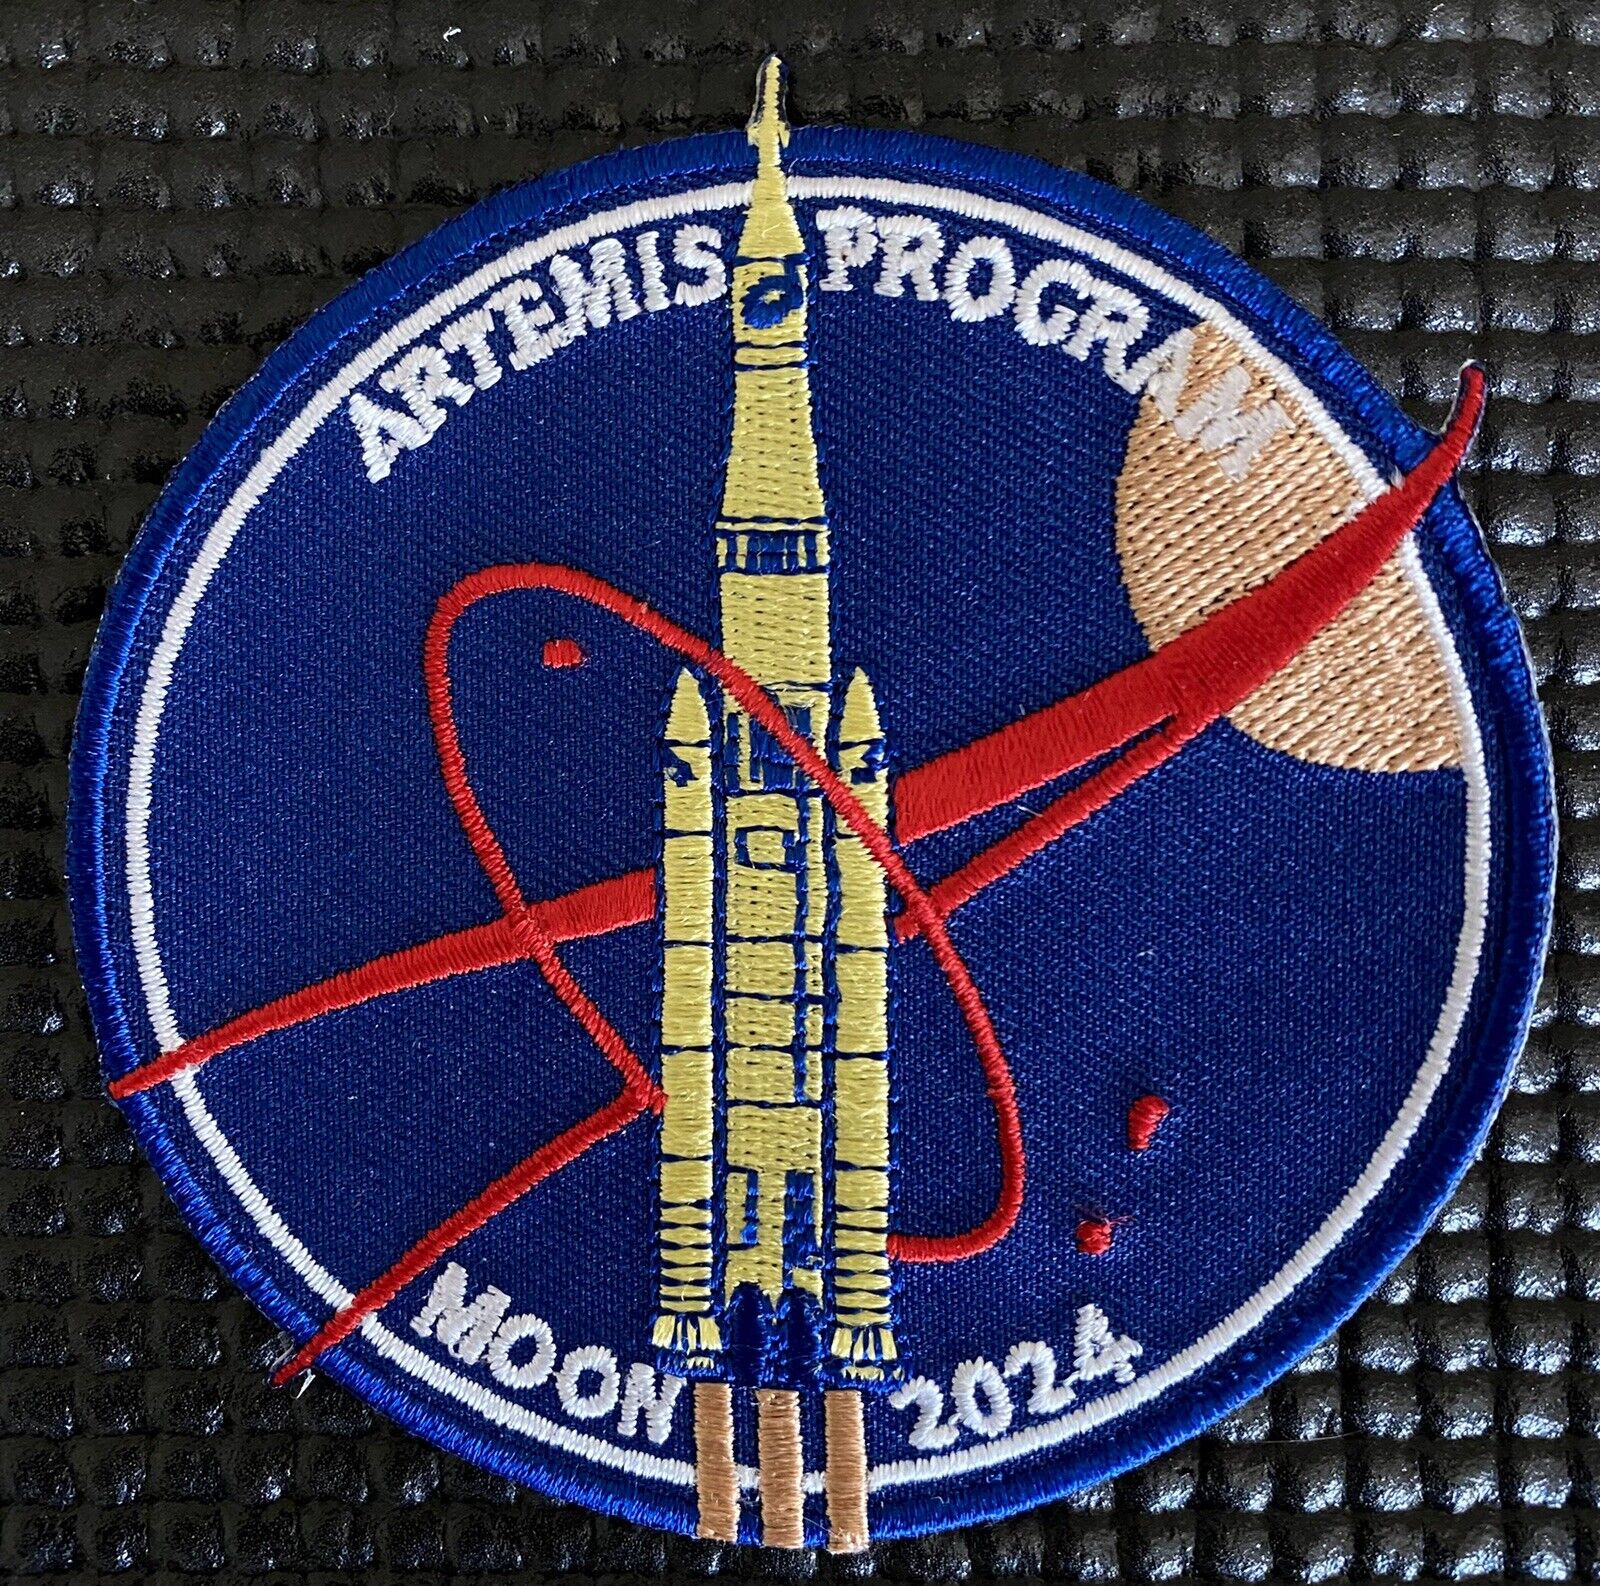 ARTEMIS PROGRAM - NASA MOON 2024 CAMPAIGN ASTRONAUT MISSION PATCH - 3.5”